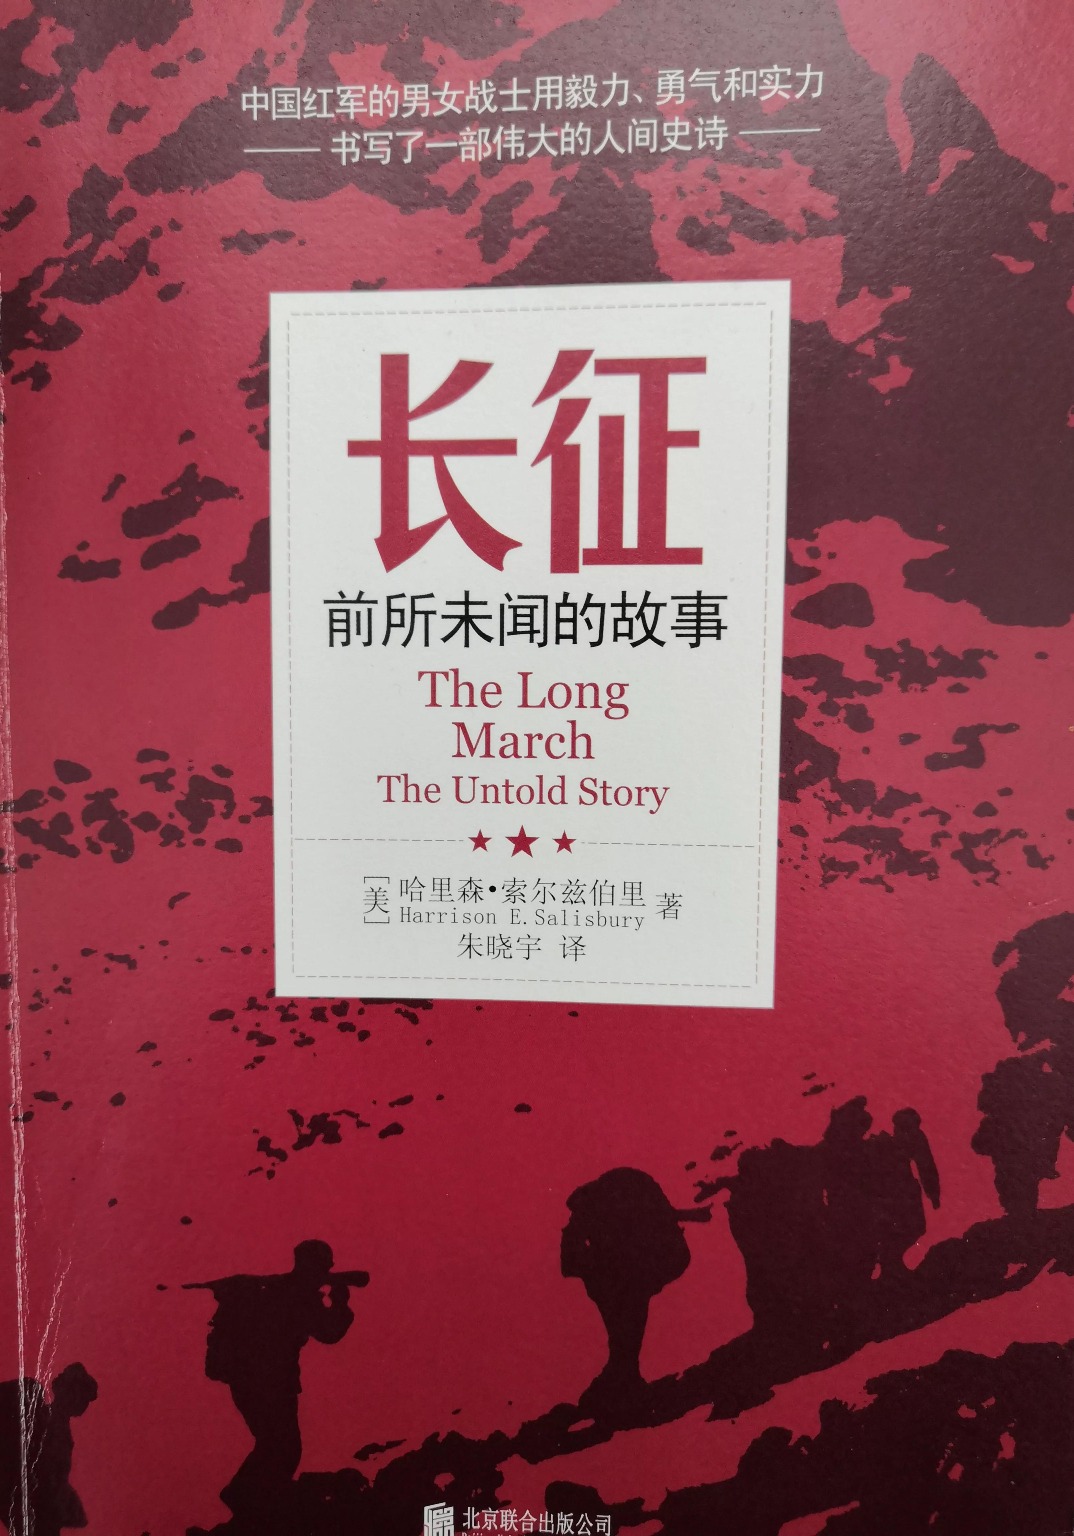 當代中國-名家-張維為看中國長征中國革命史的慘烈篇章